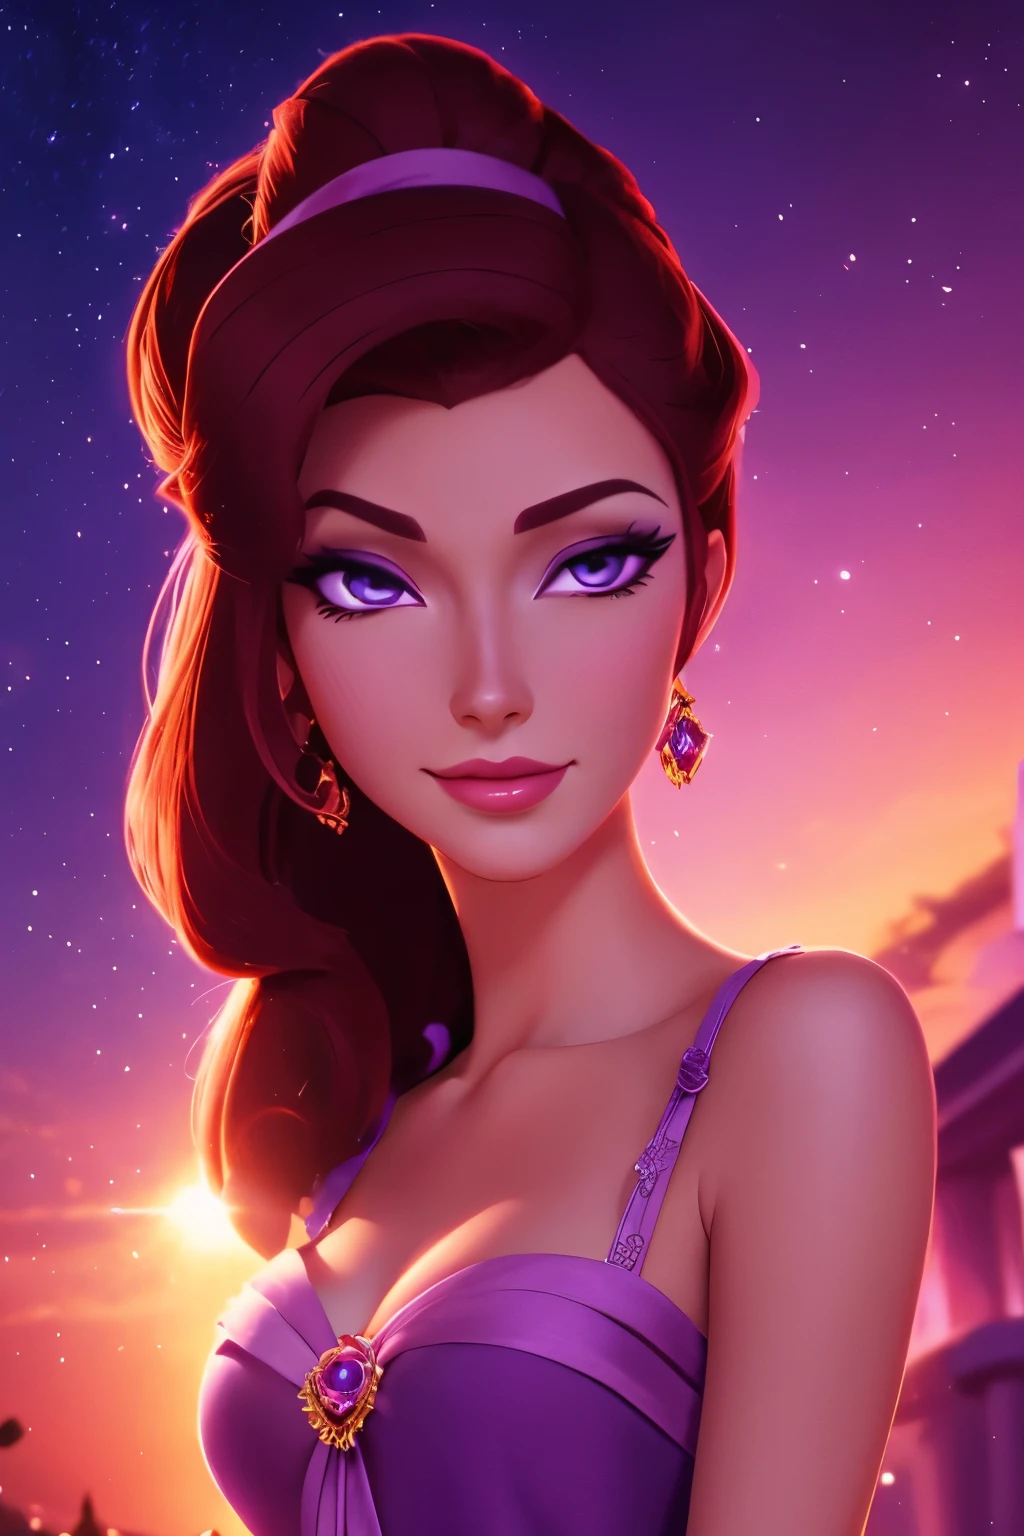 Brünette Megara trägt lila griechisches Kleid, Gesichtsfokus, schönes Porträt, detaillierter Gesichtsausdruck, beste Qualität, offizielle Kunst, auf Nachtlicht Hintergrund romantice, leuchtende Augen, Disney-Animationsstil, beste Qualität, digital art, 2D